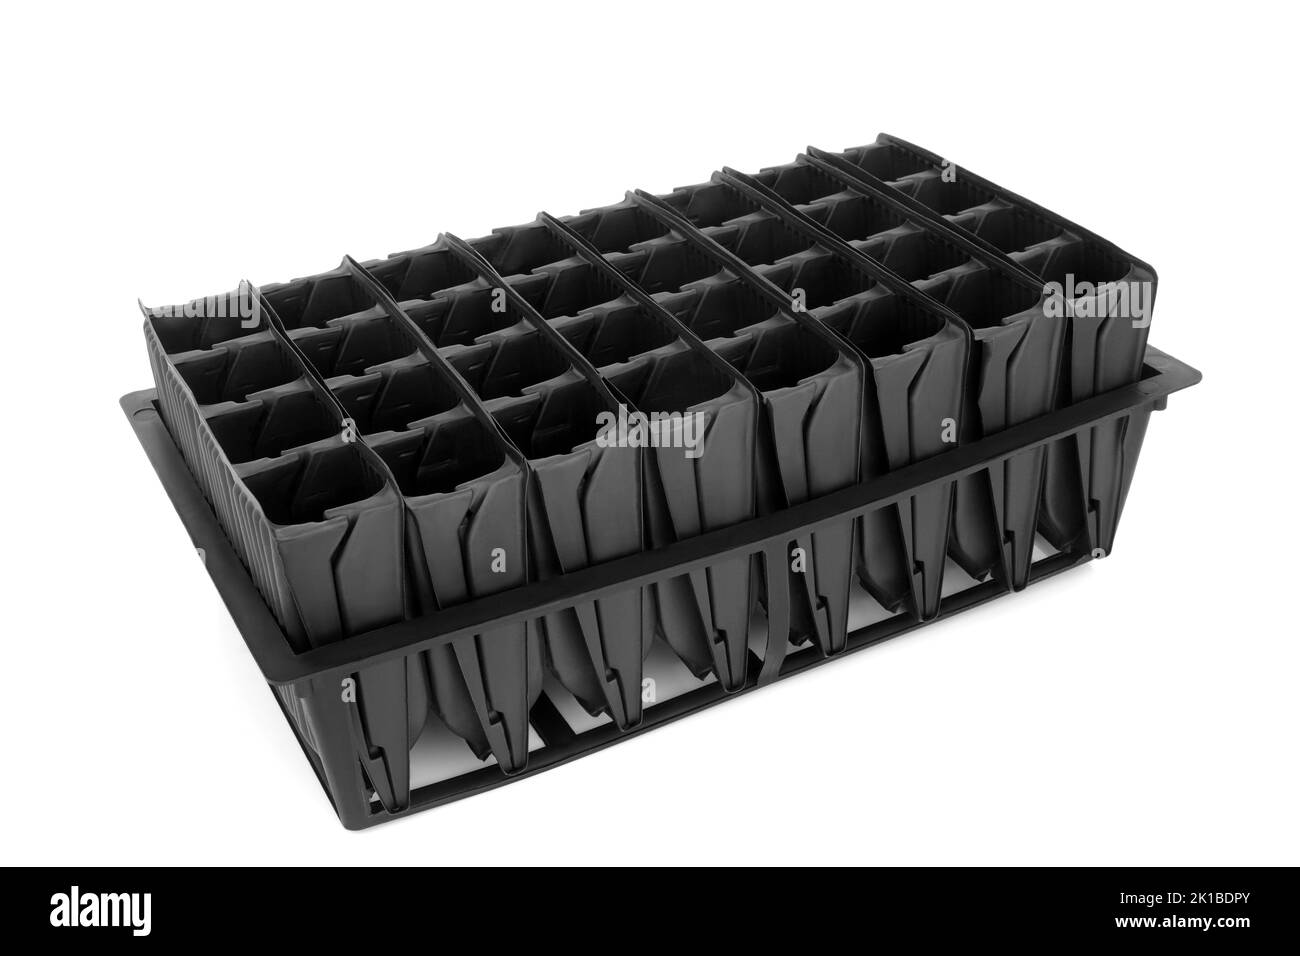 Wurzeltrainer Kunststoff-Tablett Gartengeräte für die Aussaat von Samen, um Wurzelwachstum vor der Aussaat zu entwickeln. Aufrechtes Modul aus schwarzem Kunststoff öffnen. Stockfoto